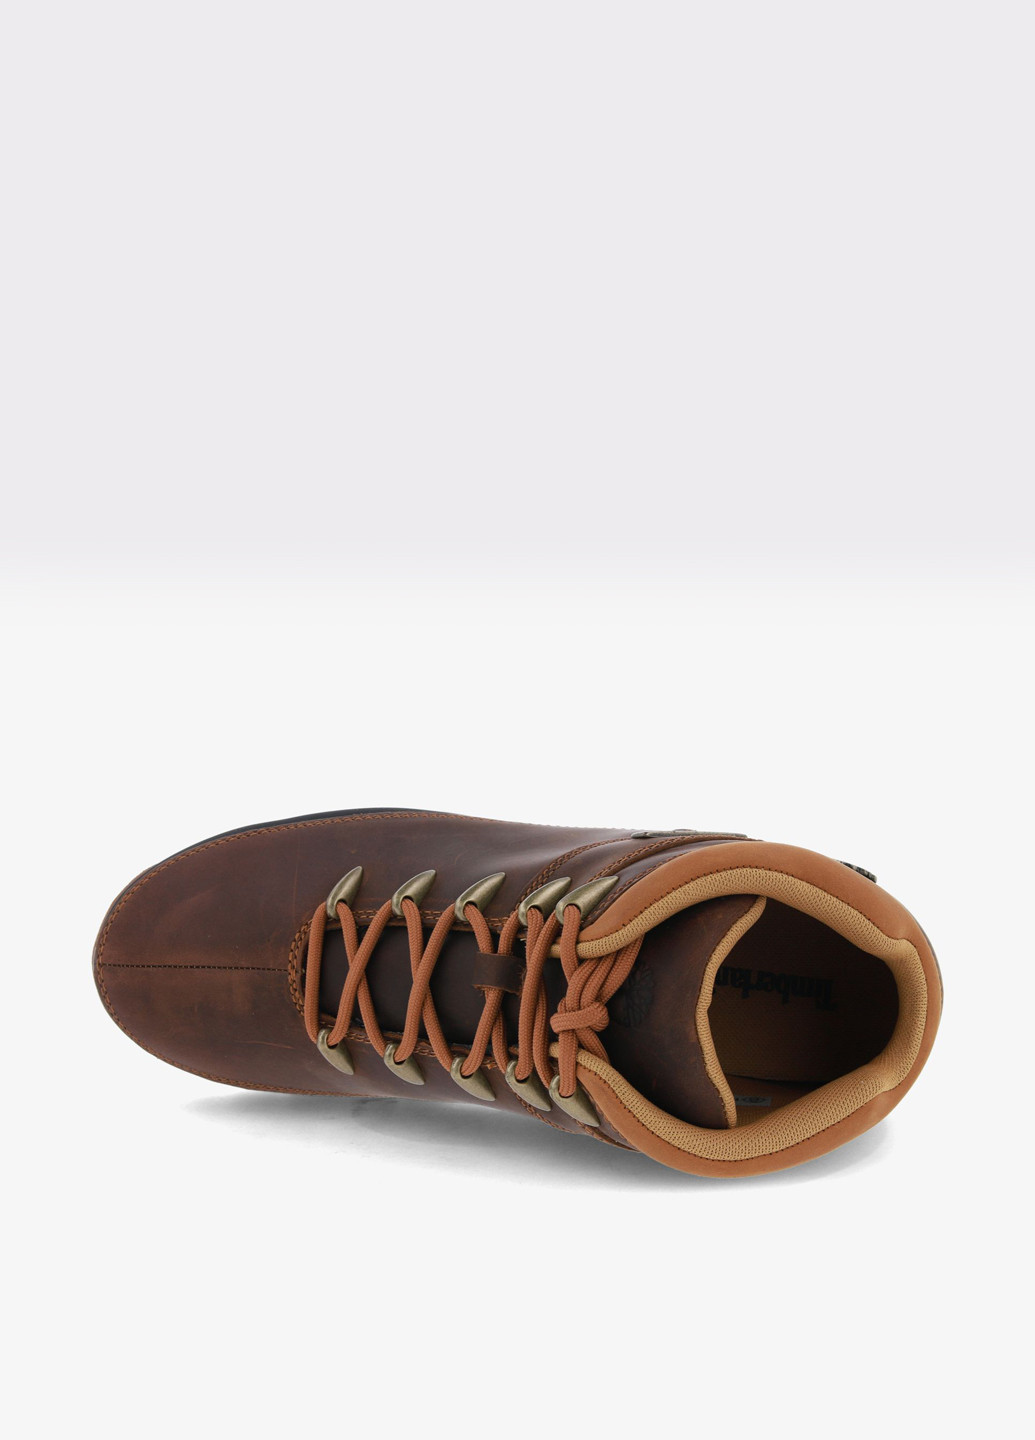 Темно-коричневые осенние ботинки Timberland